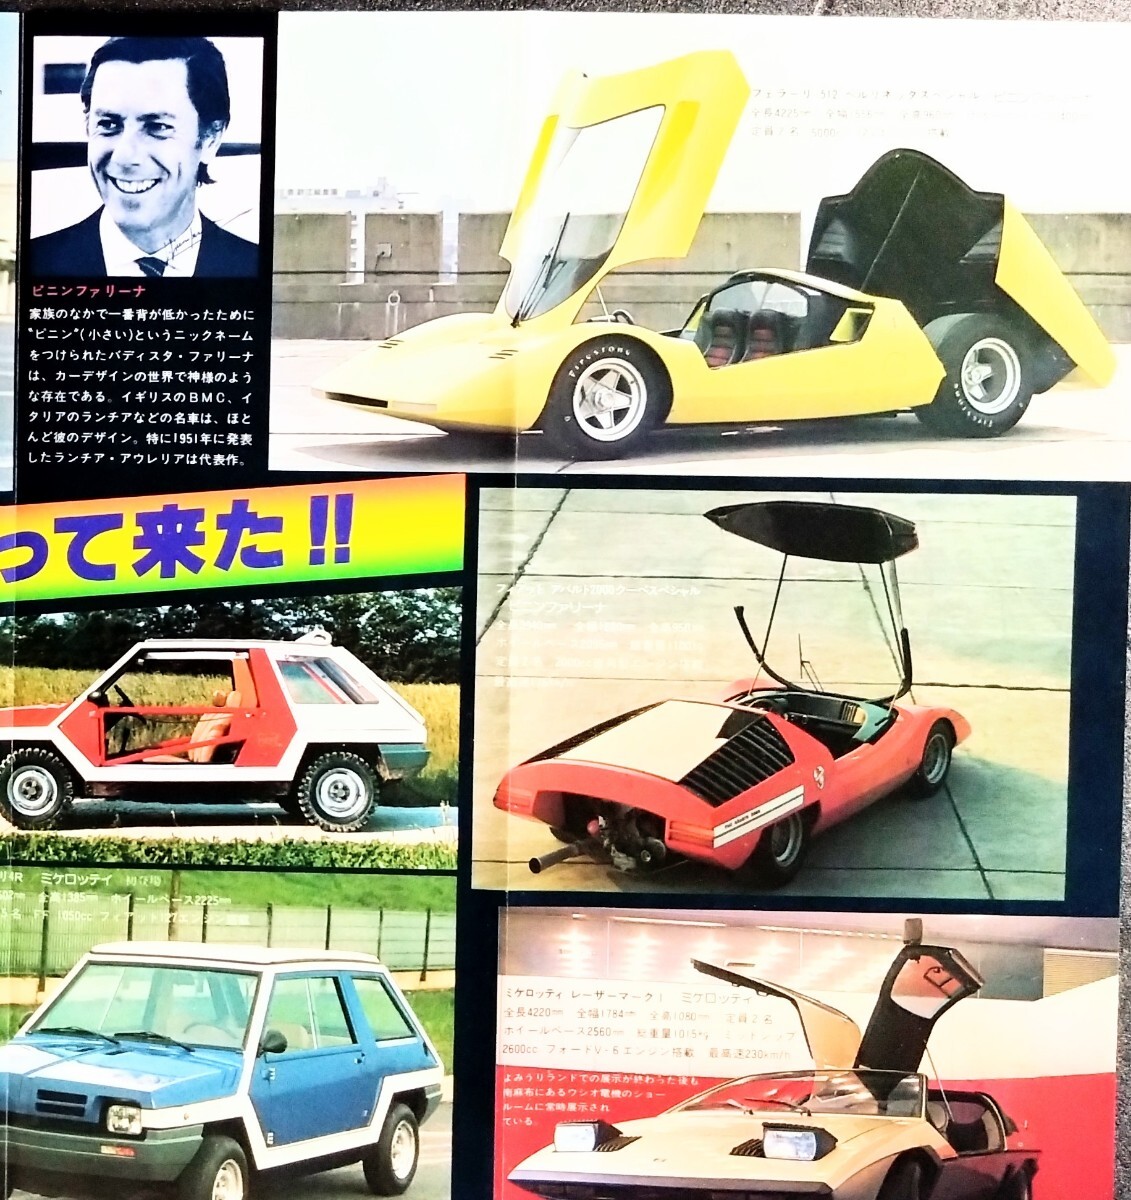 [ Dan san. иллюстрации прогулка ⑥& первый в Японии появление. Dream машина .... пришел ] двусторонний булавка nap. произведение .:. остров . 2 [ скала. подобный .. есть пейзаж ]1979 год произведение 